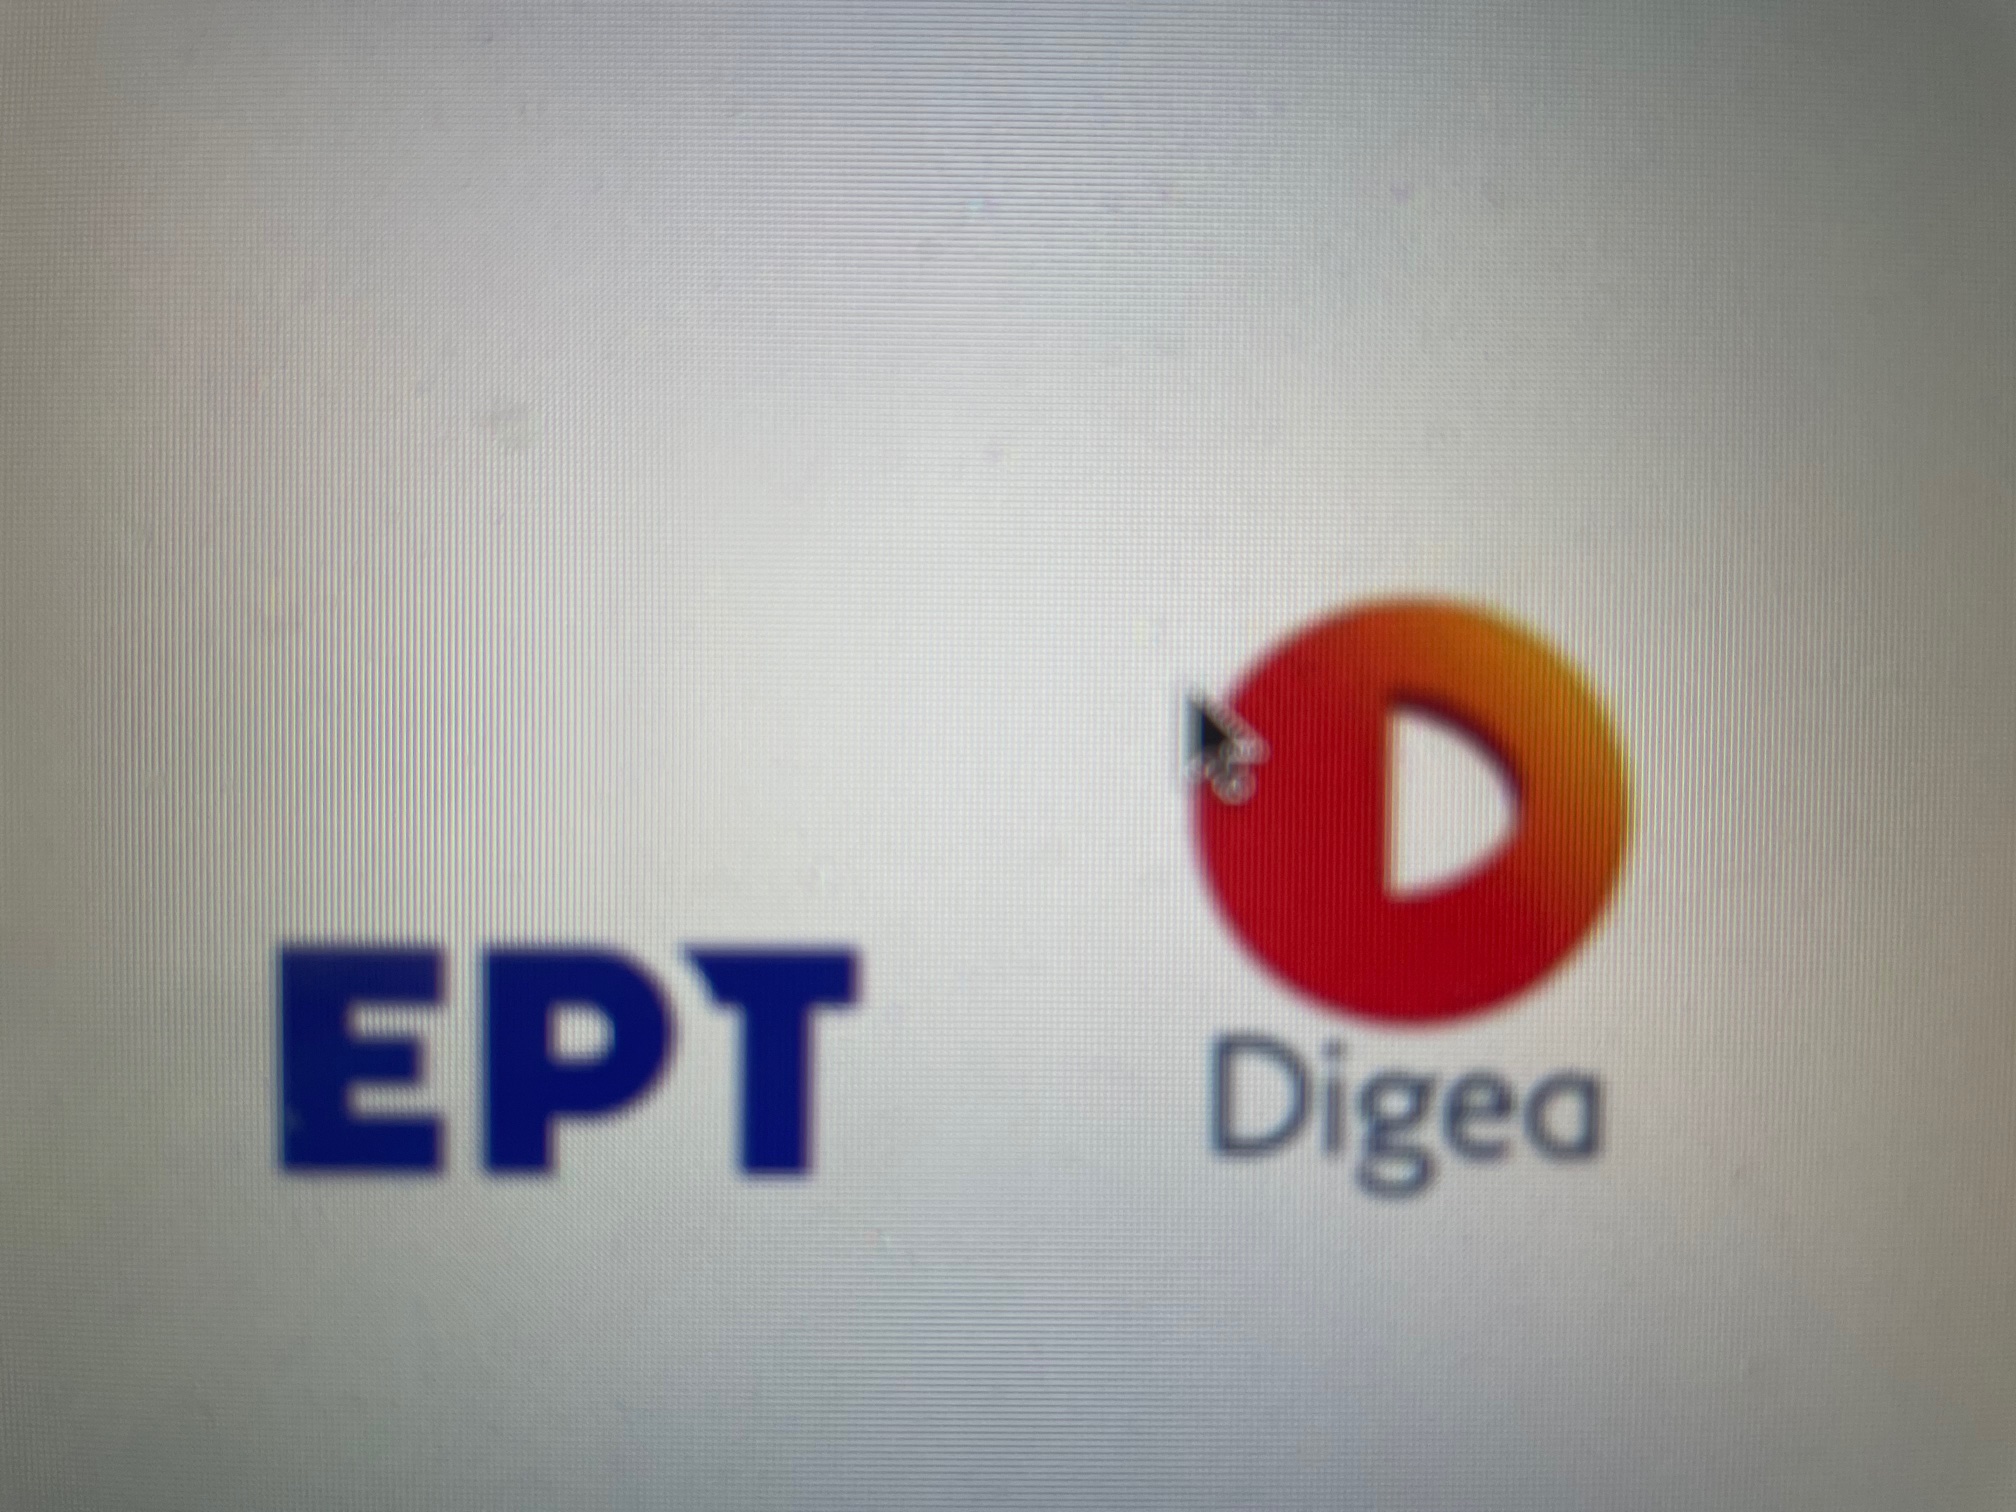 Παρατείνεται για 1 έτος η συνεργασία ΕΡΤ-Digea